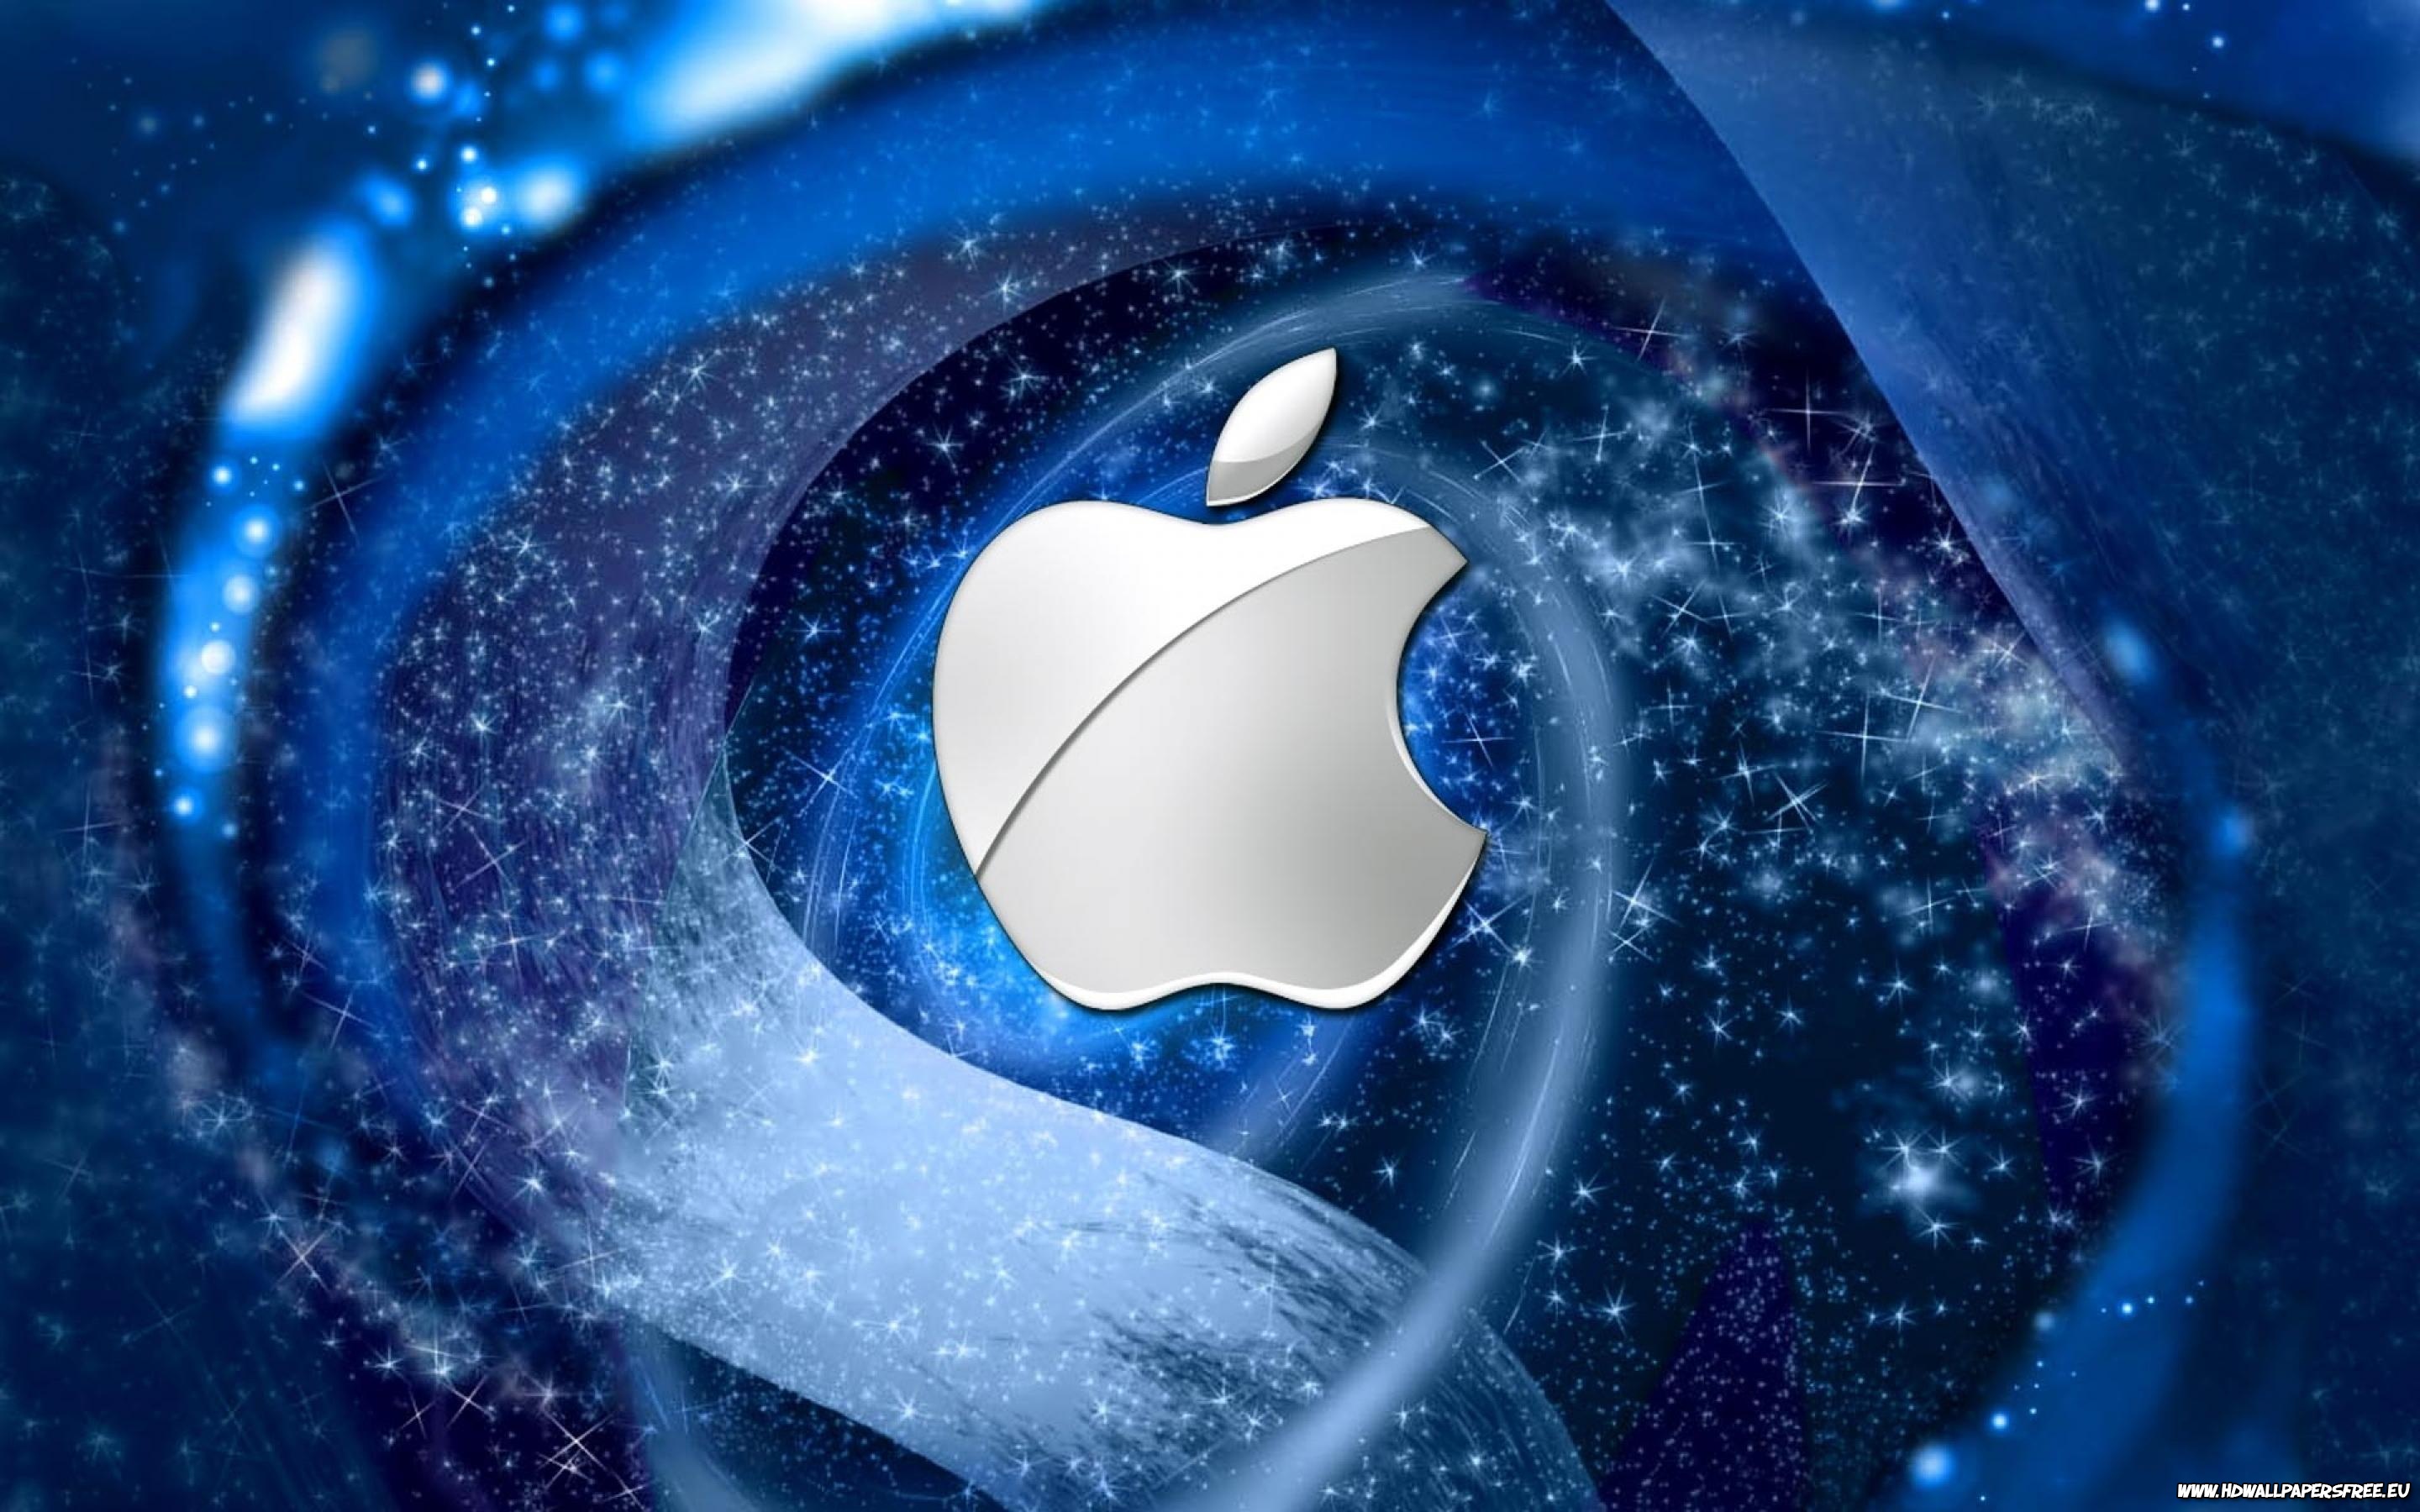 75+] Cool Apple Logo Wallpaper - WallpaperSafari